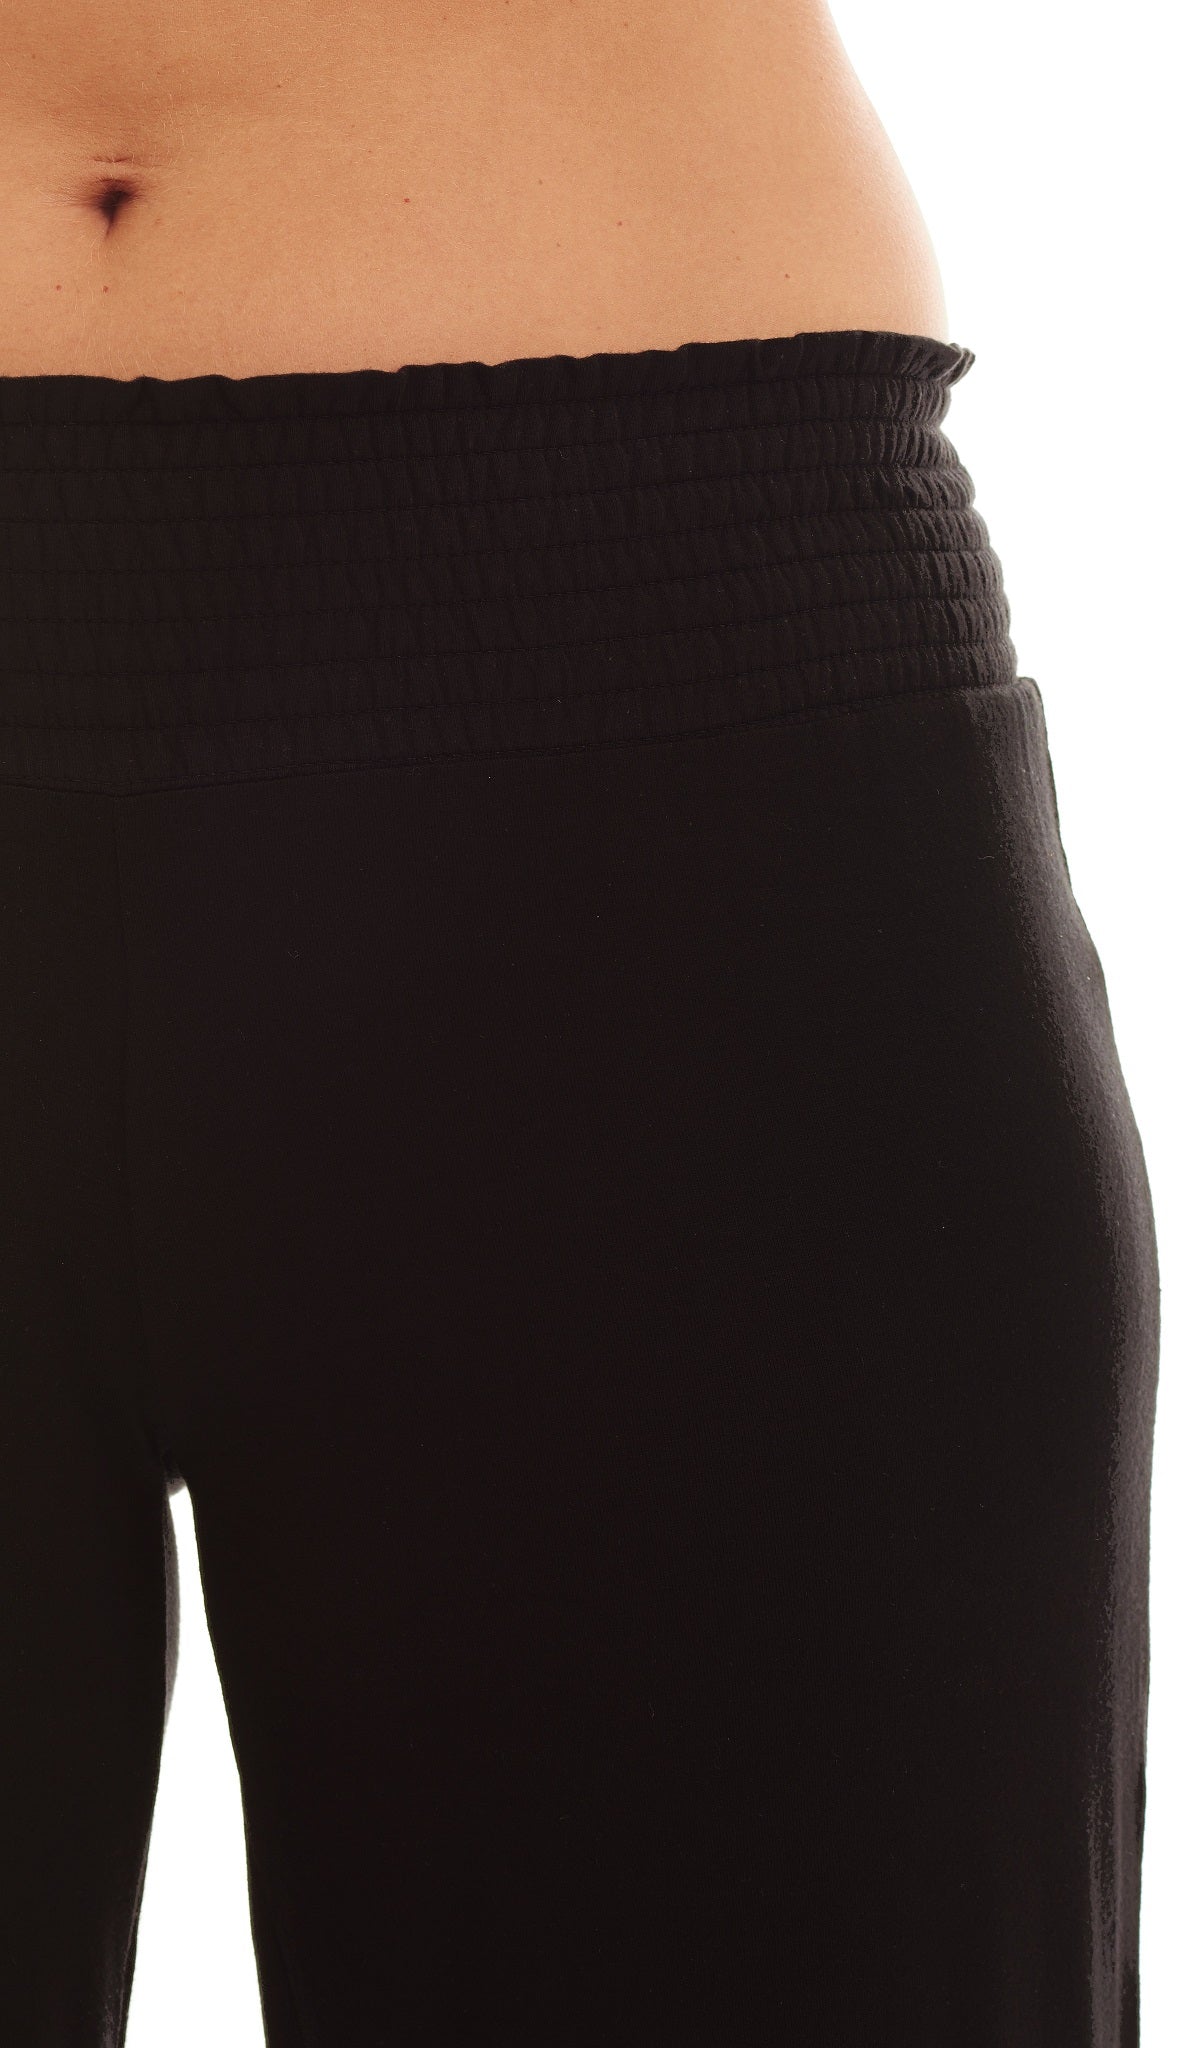 Black Analise 3-Piece Set, detailed shot of smocked elastic waistband.